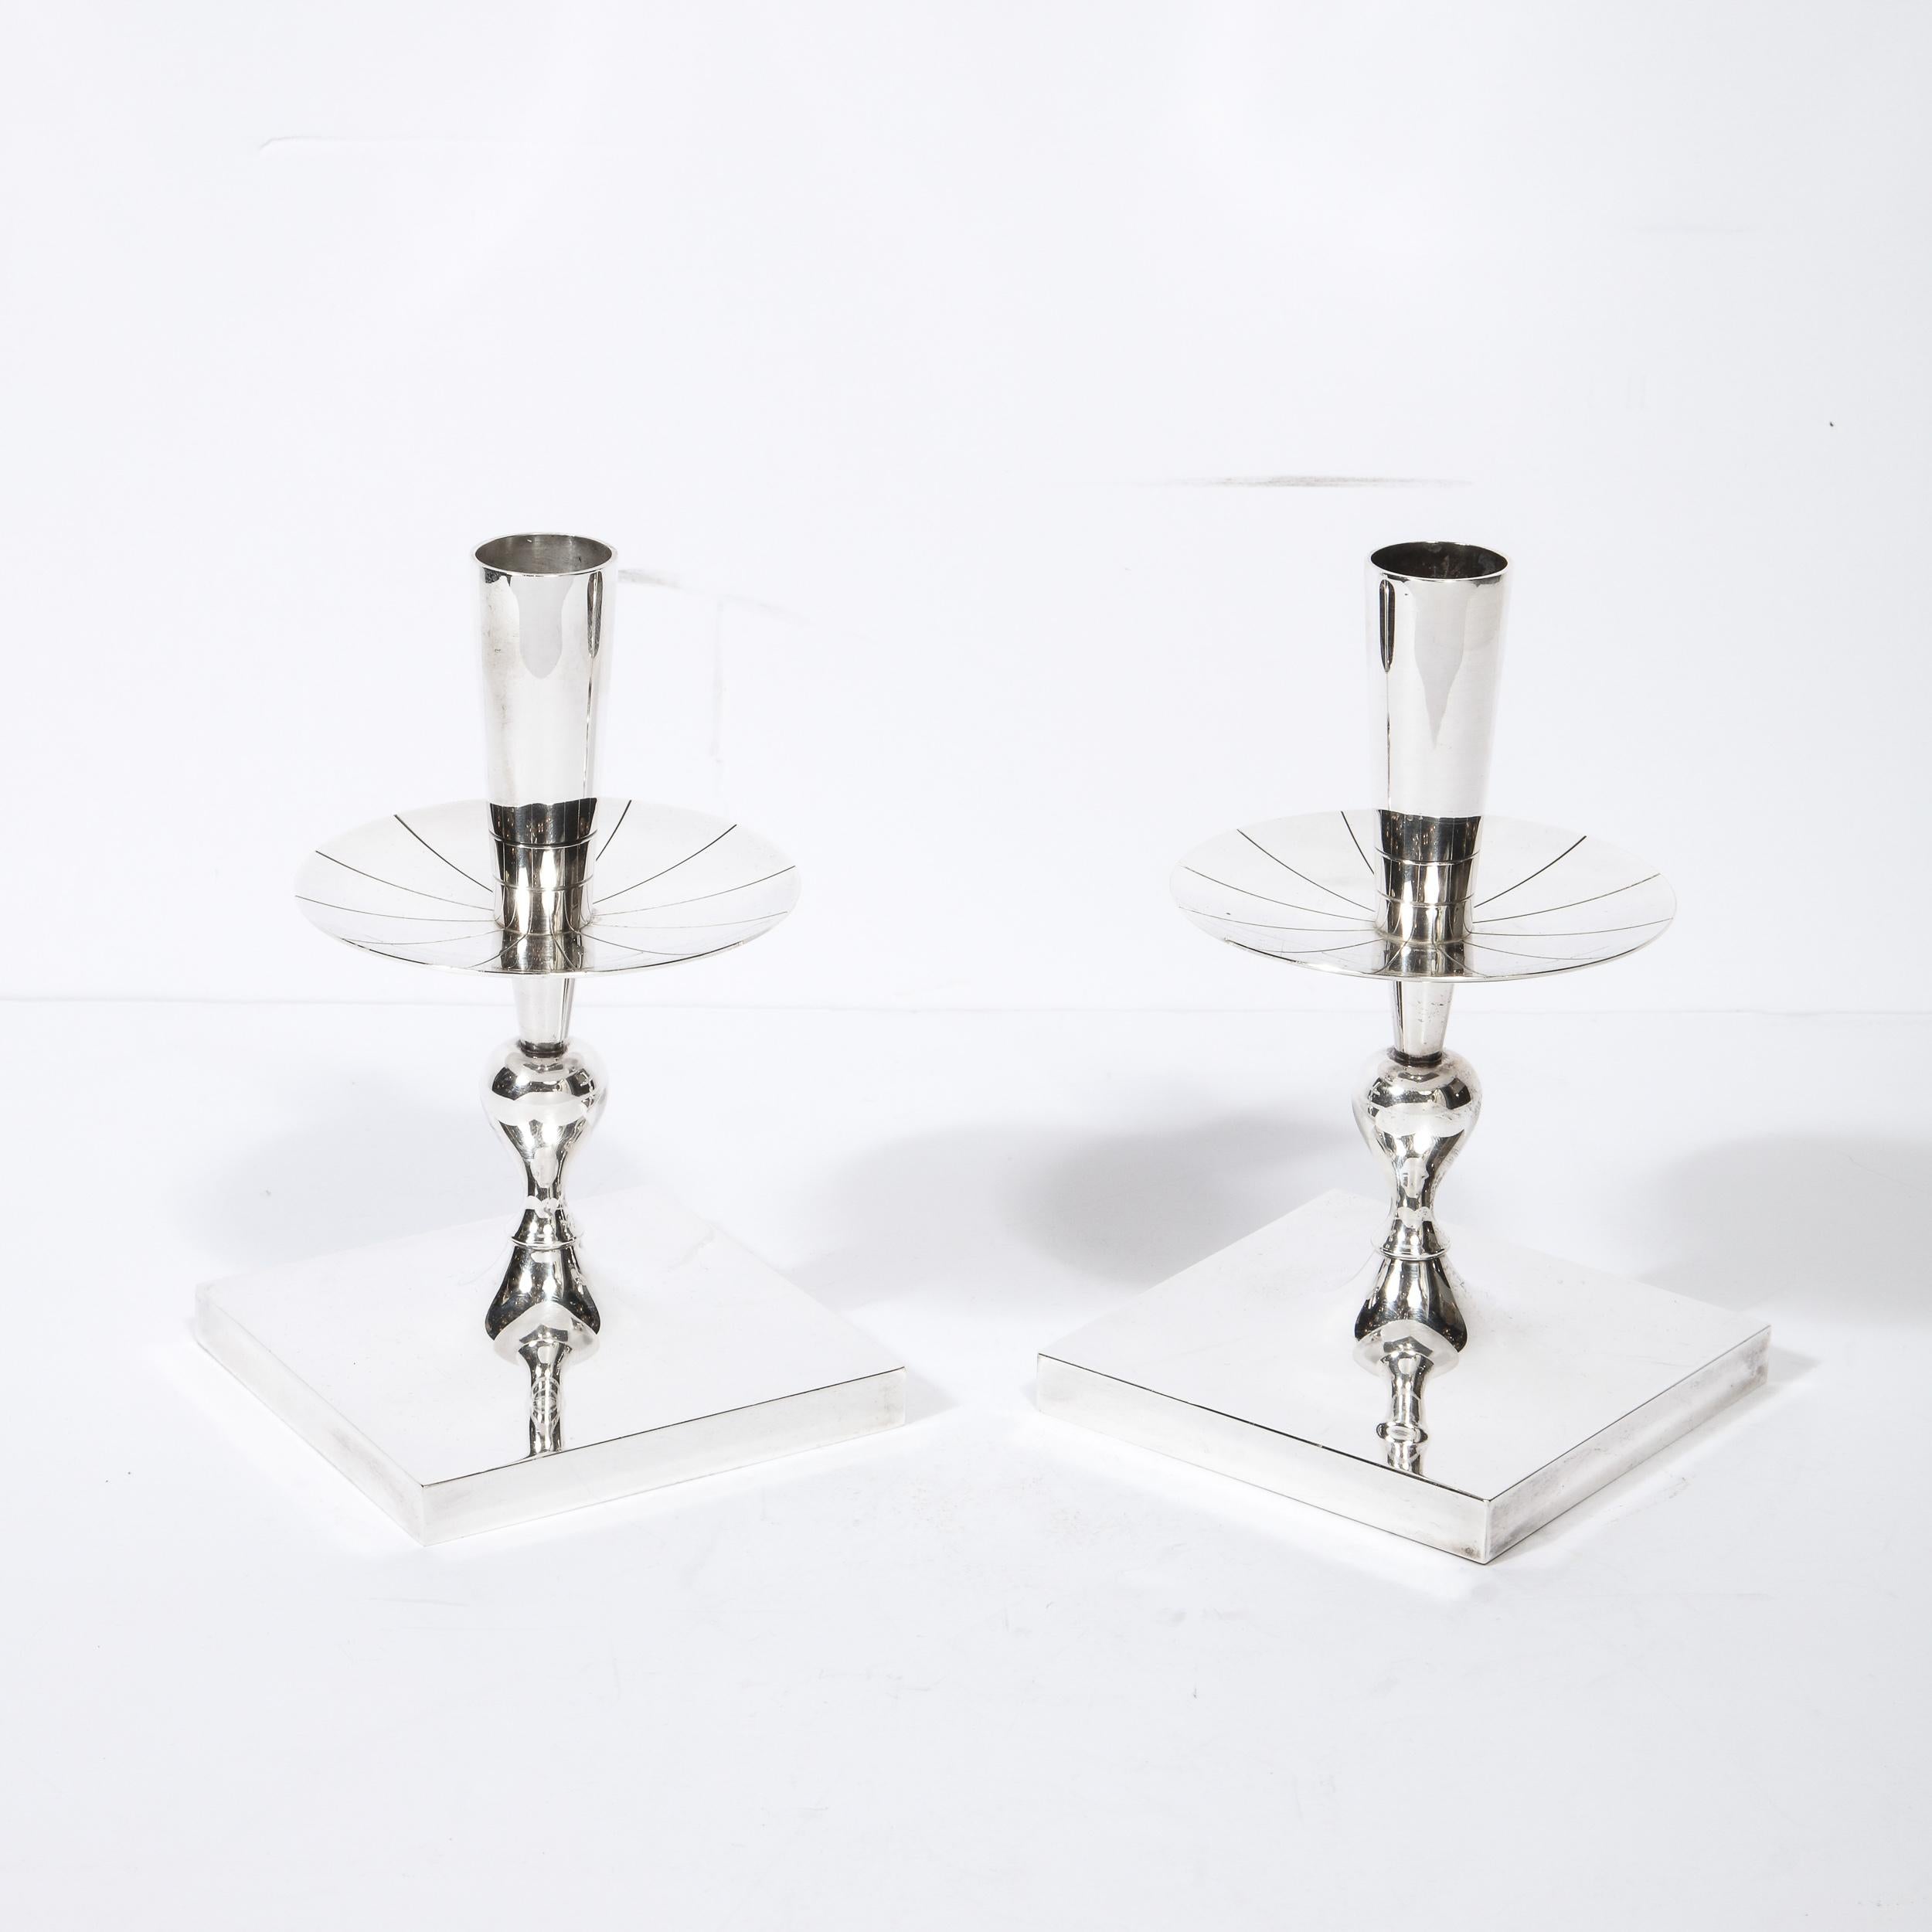 Dieses wunderschöne Paar versilberter Kerzenständer wurde von Tommi Parzinger für Dorlyn Silversmiths in den Vereinigten Staaten um 1950 entworfen. Sie verfügen über voluminöse, quadratische Sockel, skulpturale, wellenförmige Körper und